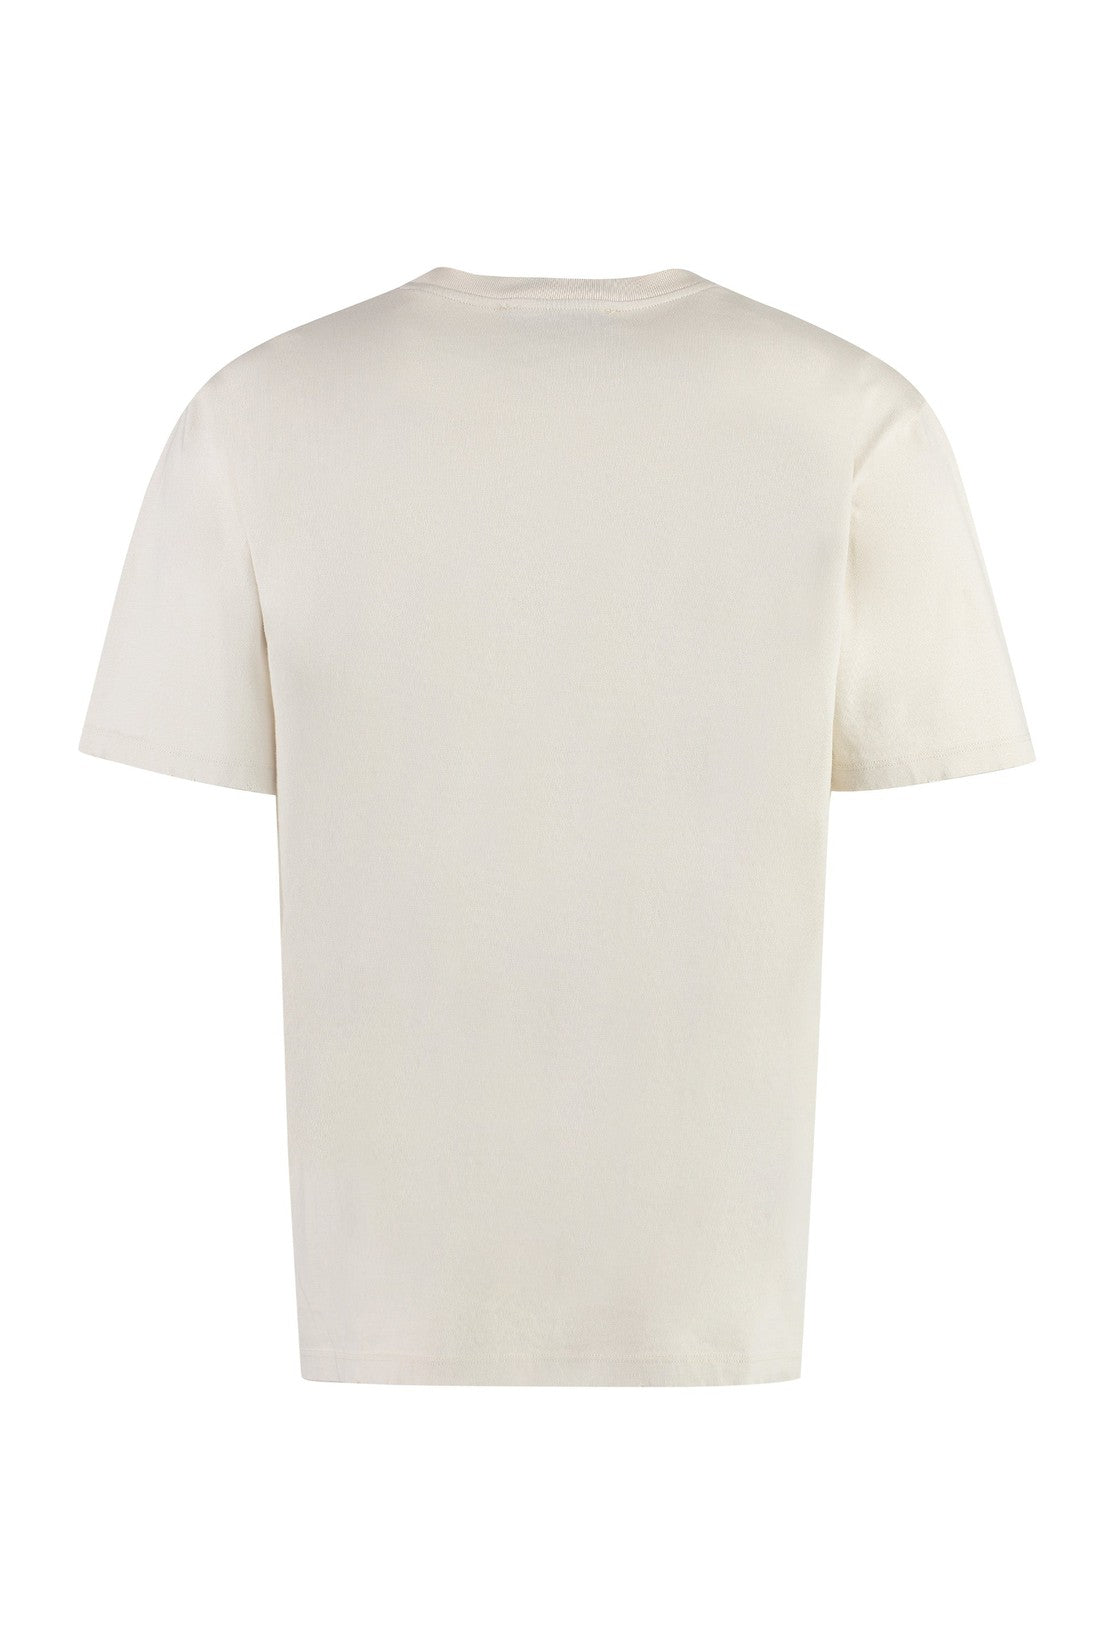 Barrow-OUTLET-SALE-Logo cotton t-shirt-ARCHIVIST